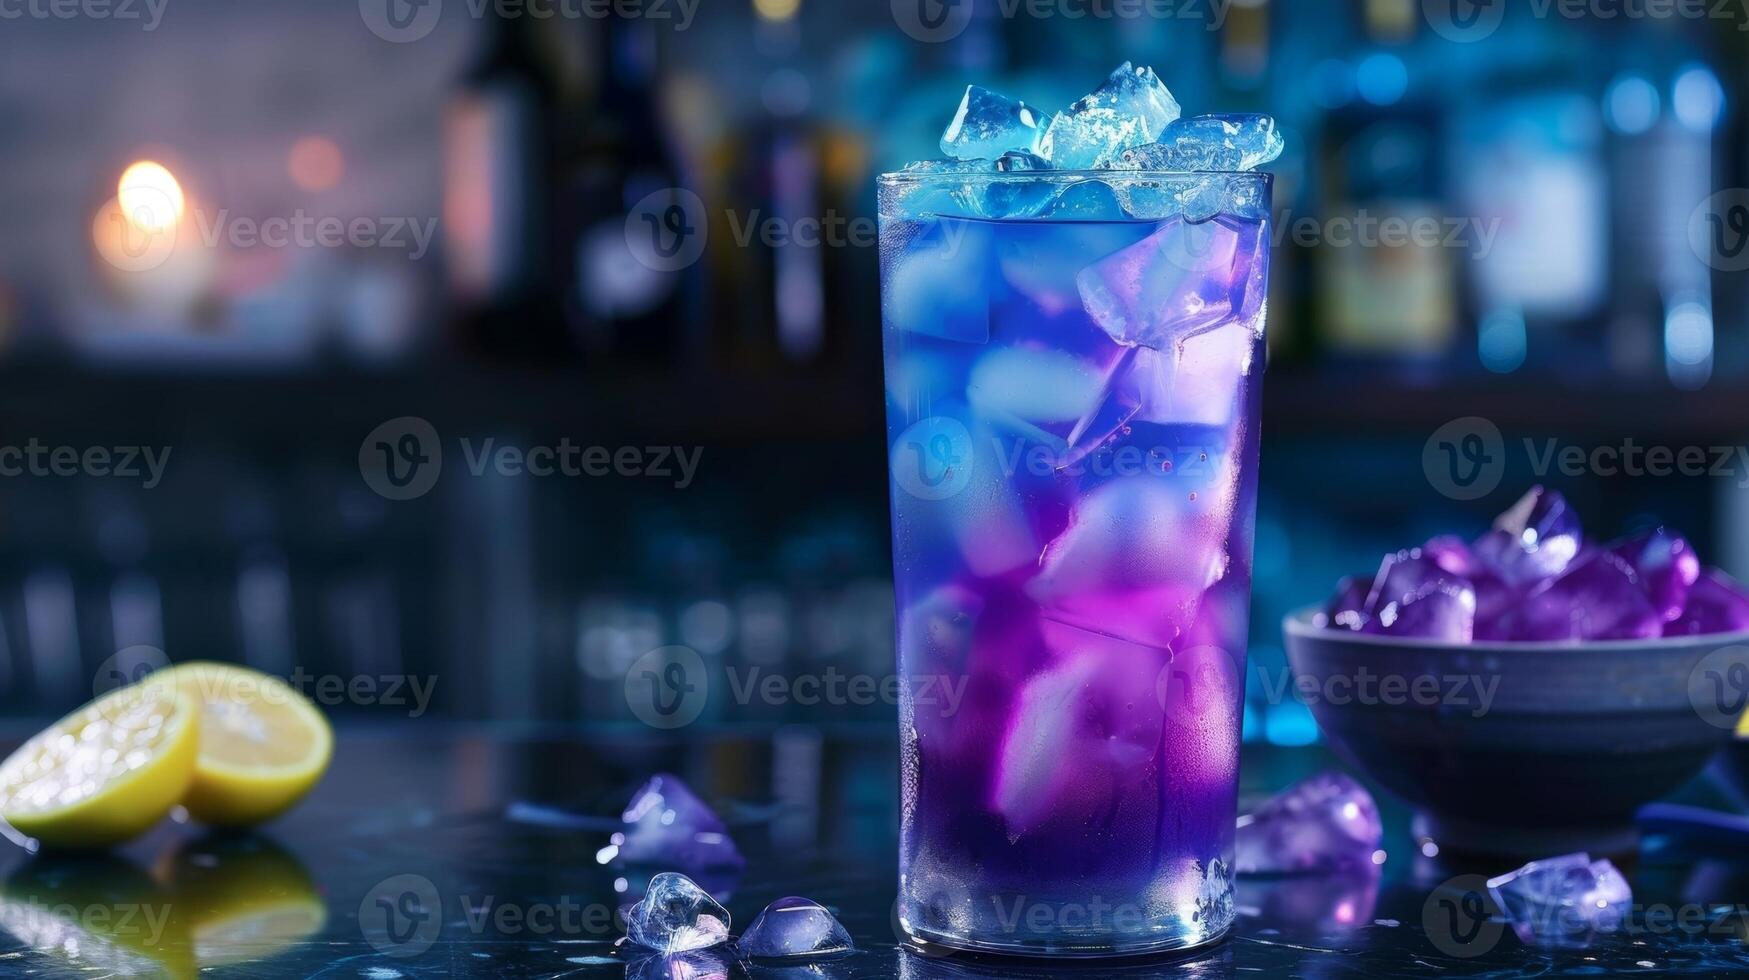 levendig blauw en Purper tinten kolken samen in een handtekening cocktail gemaakt met bovenste plank wodka vlinder erwt bloem thee en een plons van pittig citroen sap voor een visueel verbijsterend drin foto